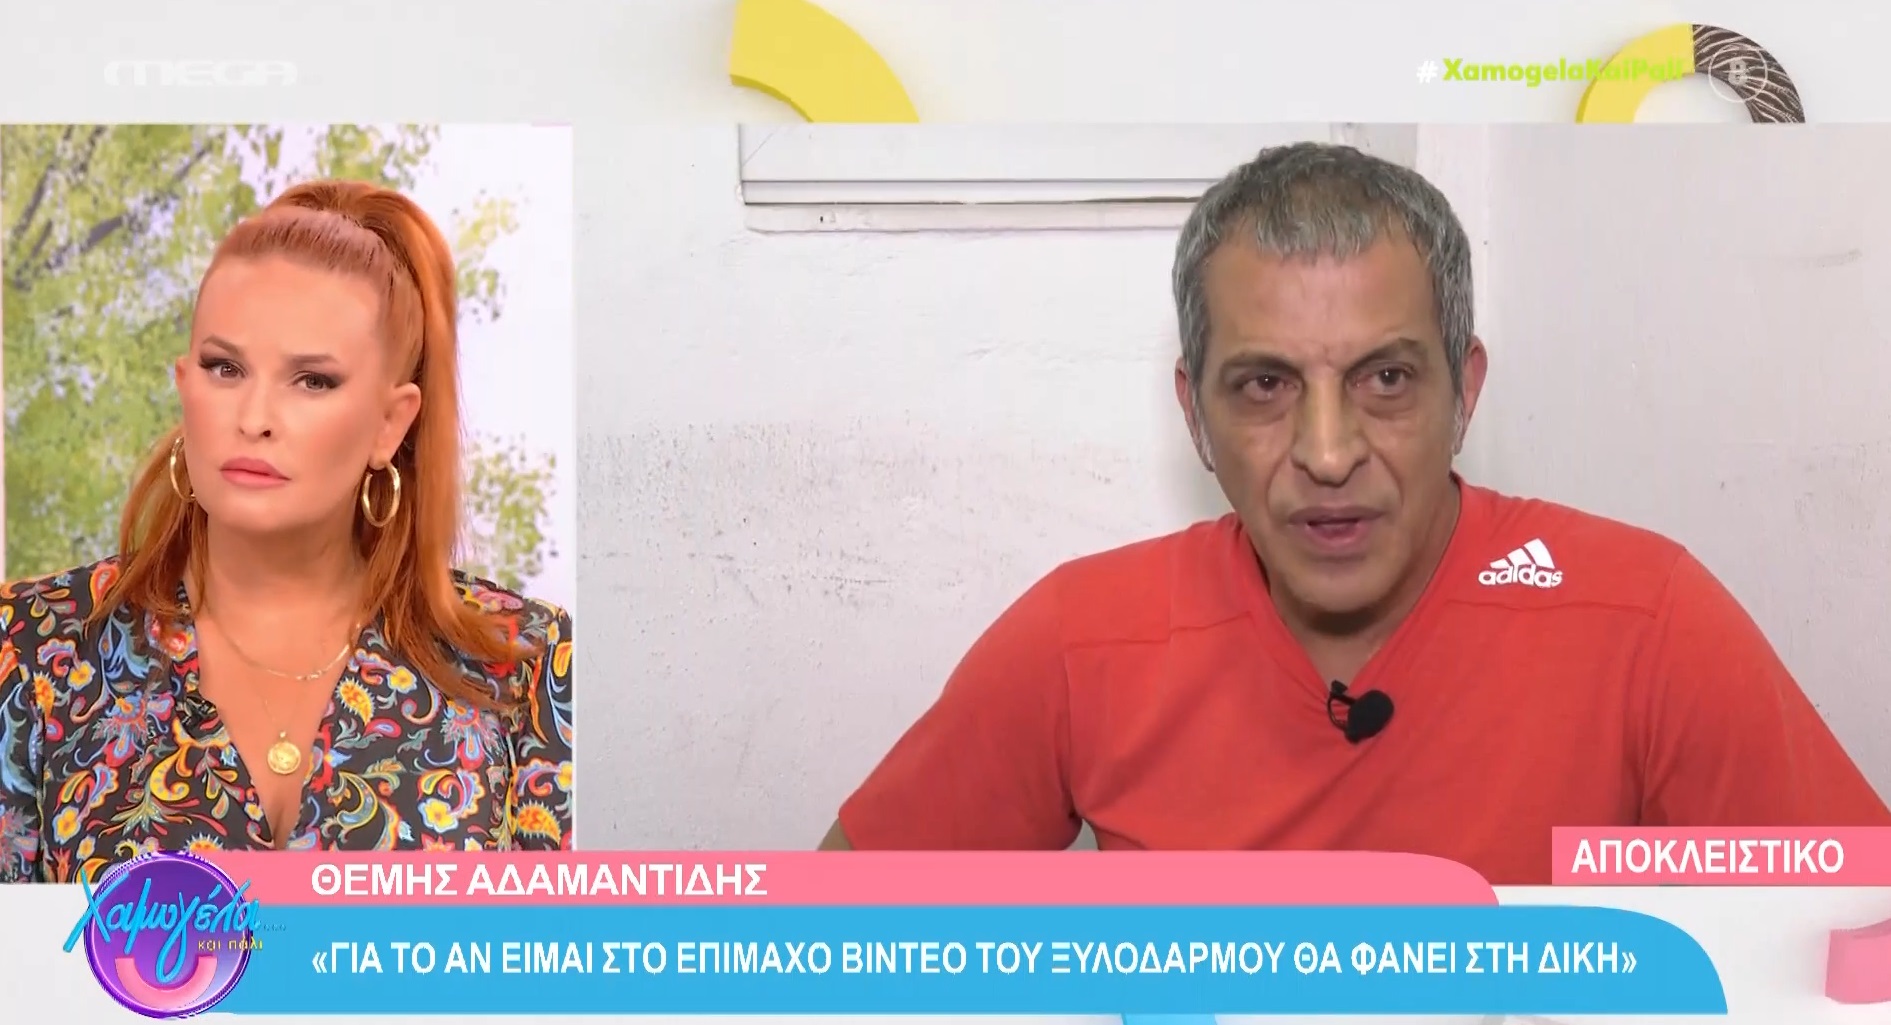 Θέμης Αδαμαντίδης: Αρνείται τον ξυλοδαρμό - Ζητά συγγνώμη από τους θαυμαστές του σε συνέντευξη που παραχώρησε (βίντεο)